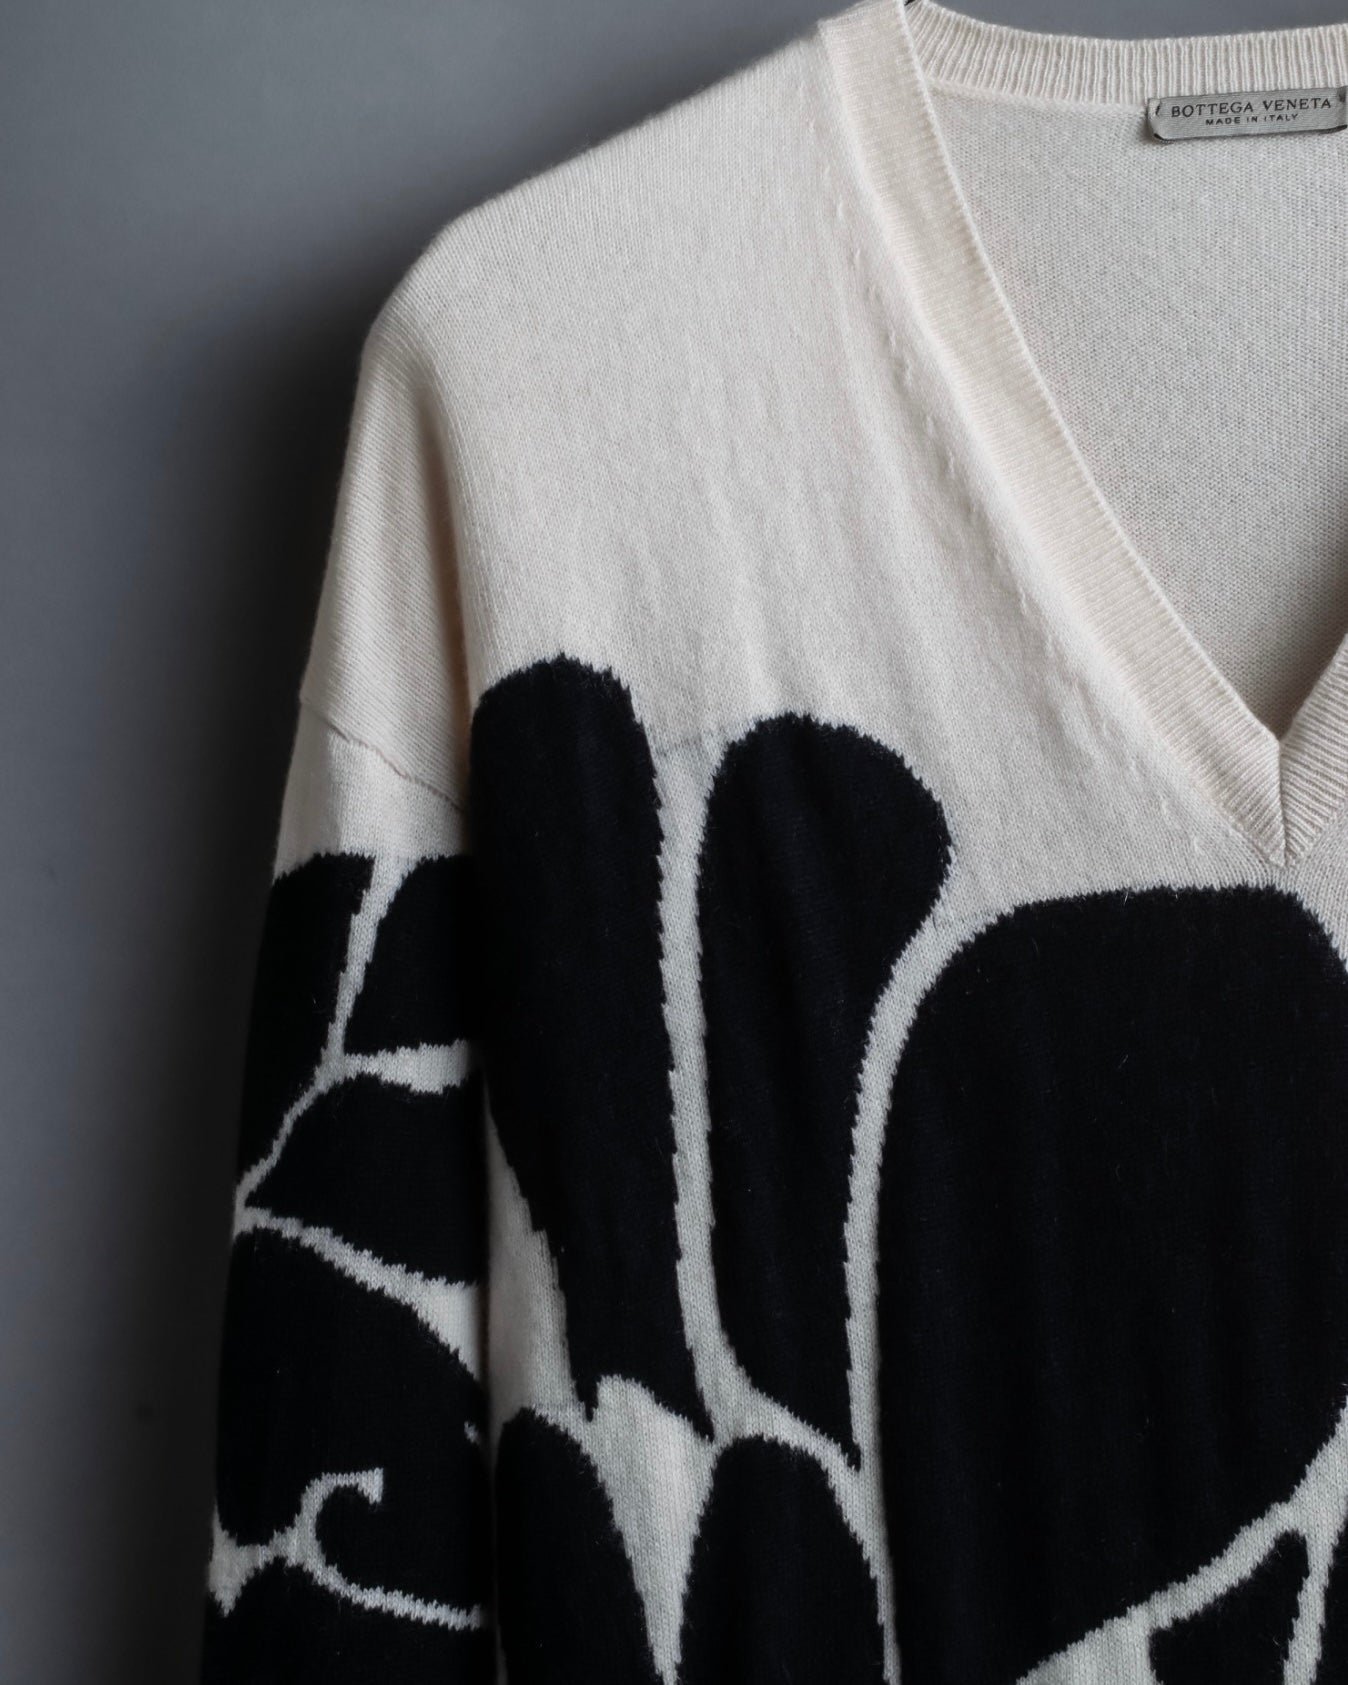 "BOTTEGA VENETA" art pattern cashmere 100% knit